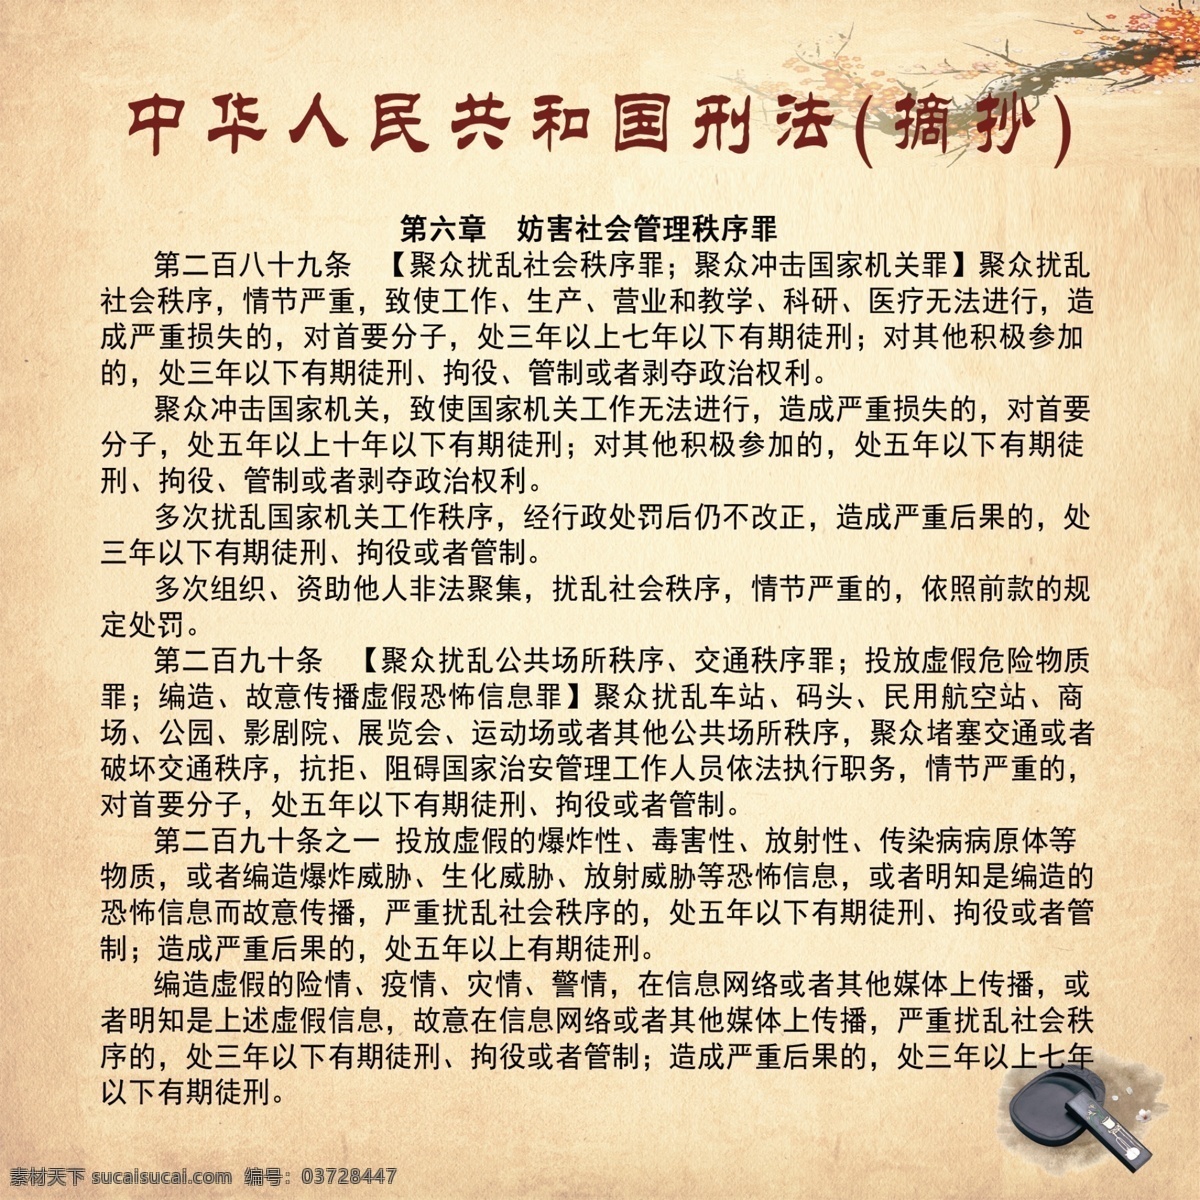 刑法摘抄 中华人民共和国 新修订刑法 白色